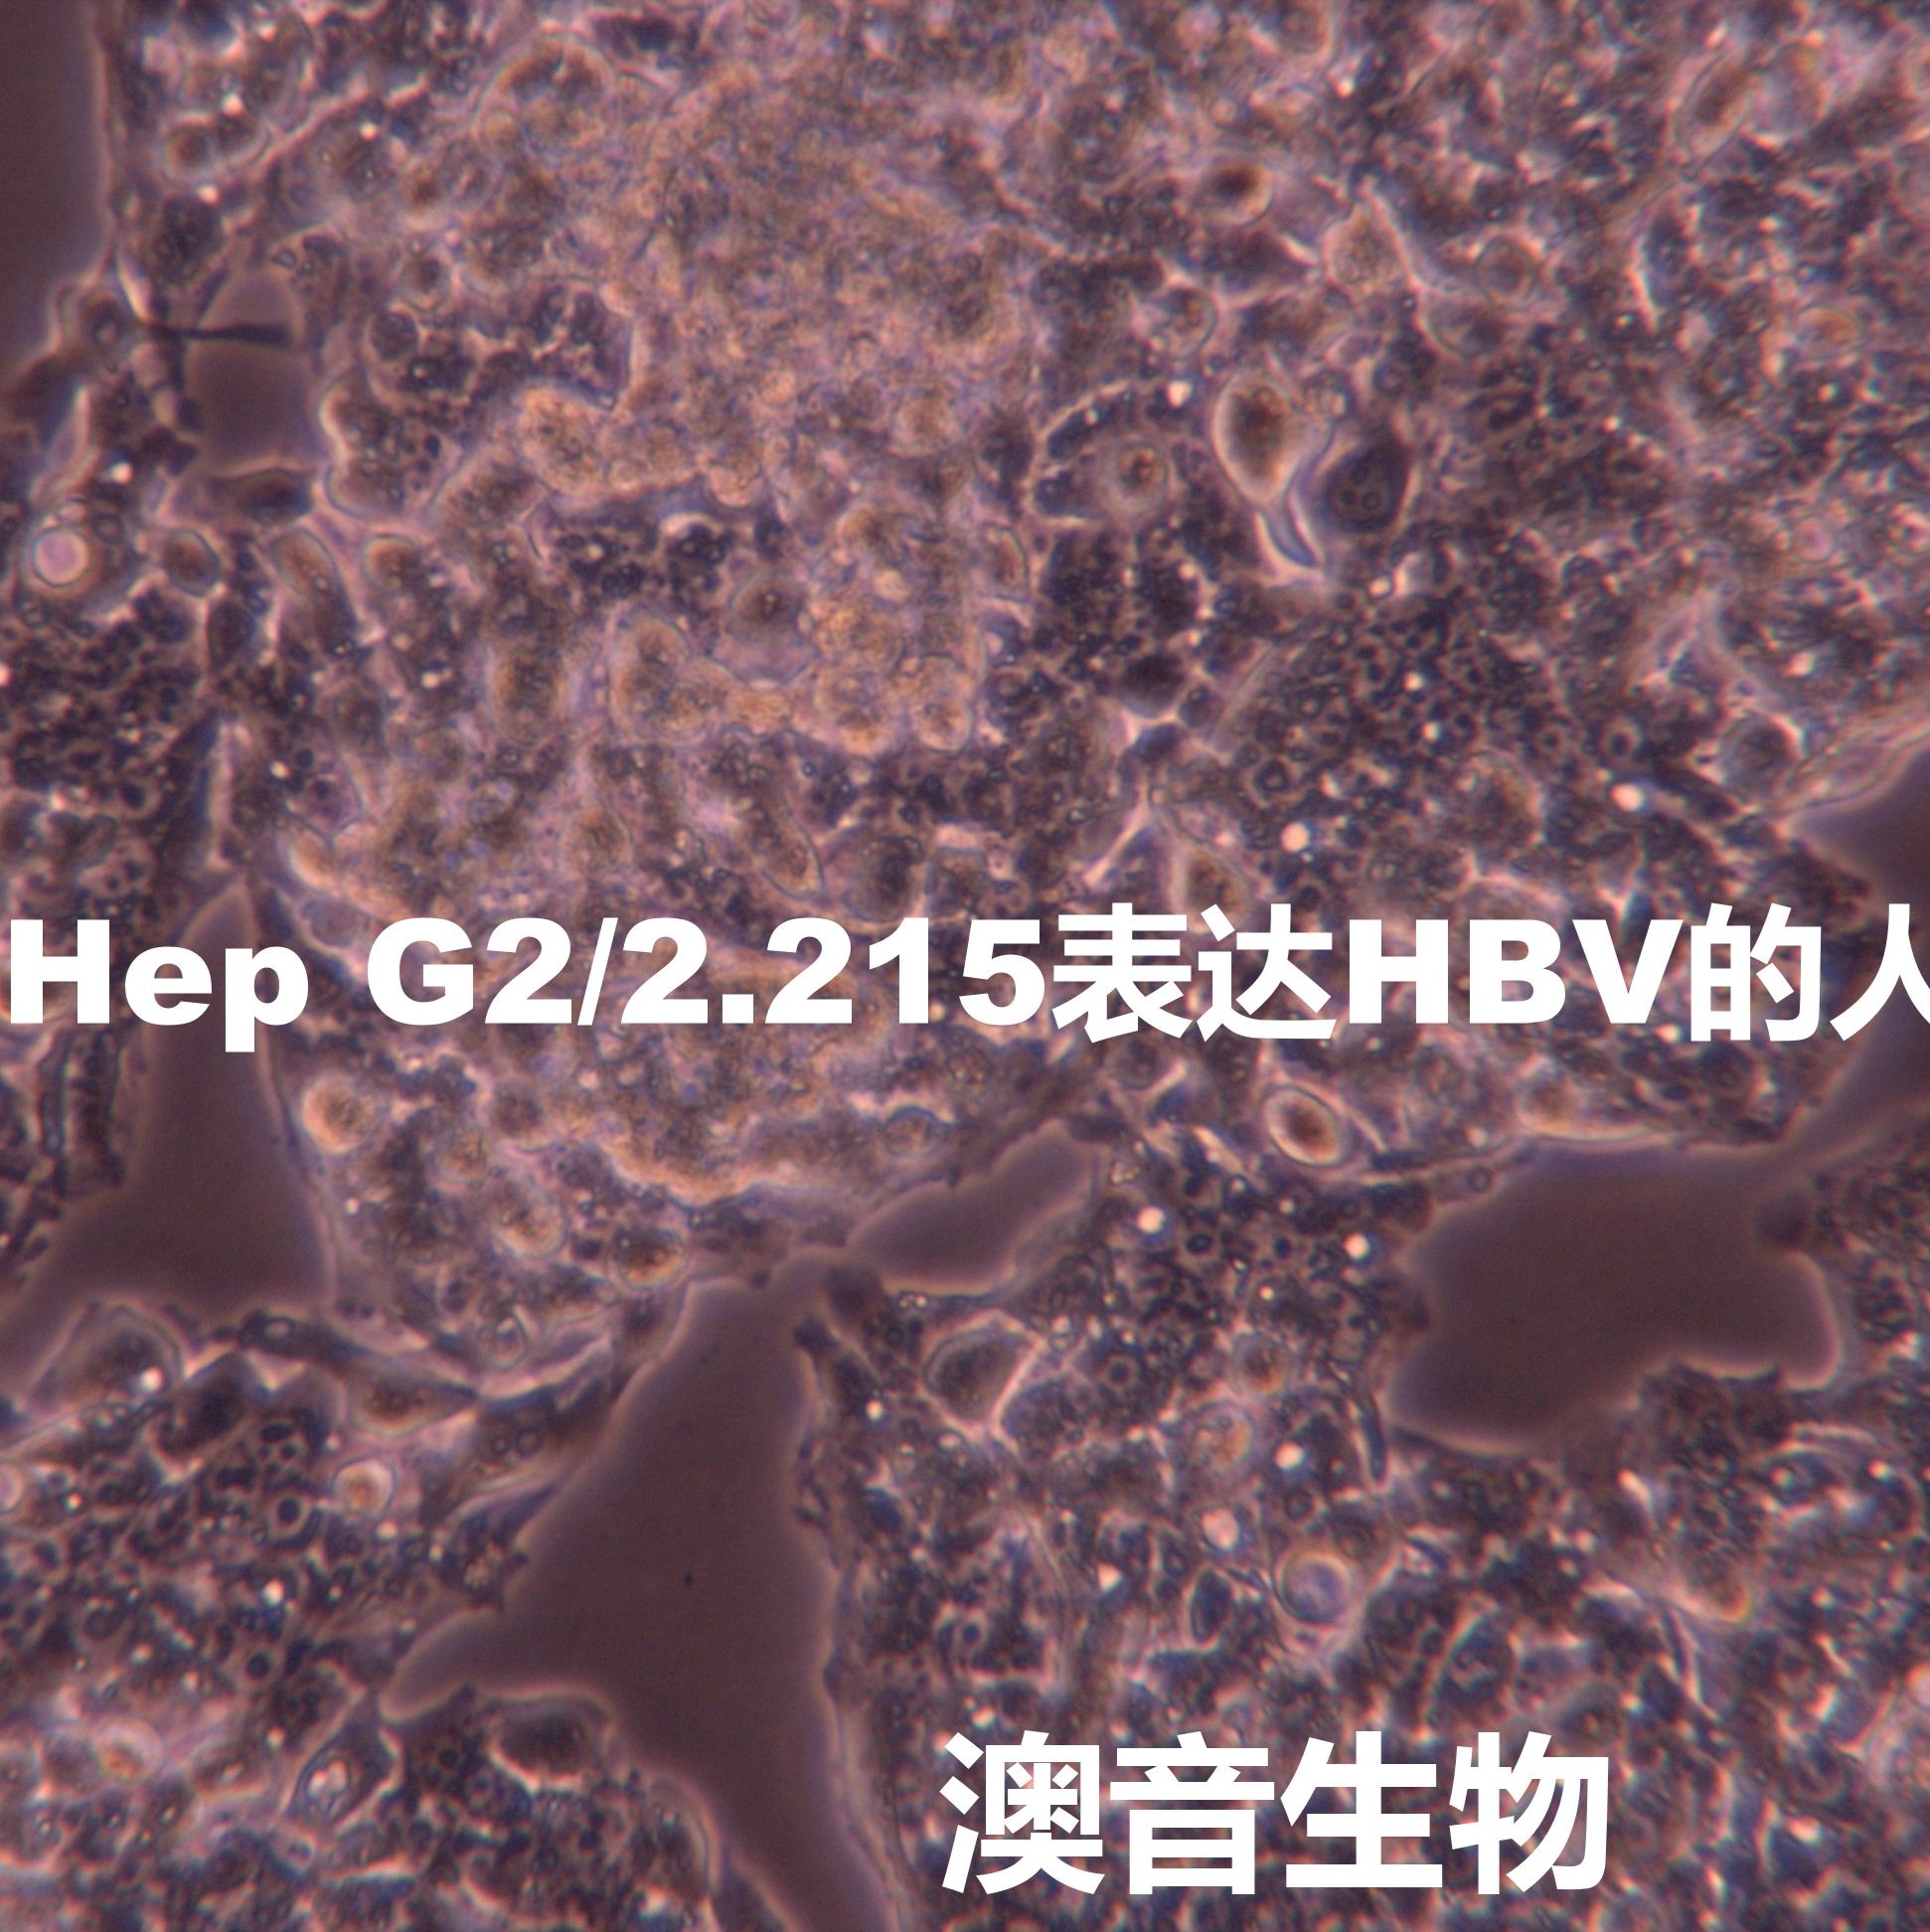 Hep-G2/2.2.15【HEP-G2/2.2.15; Hep-G2/2215; HepG2-2.2.15; HepG2 2.2.15; HepG2.2.15; HepG2(2.2.15); 2.2.15】表达HBV病毒的肝癌细胞